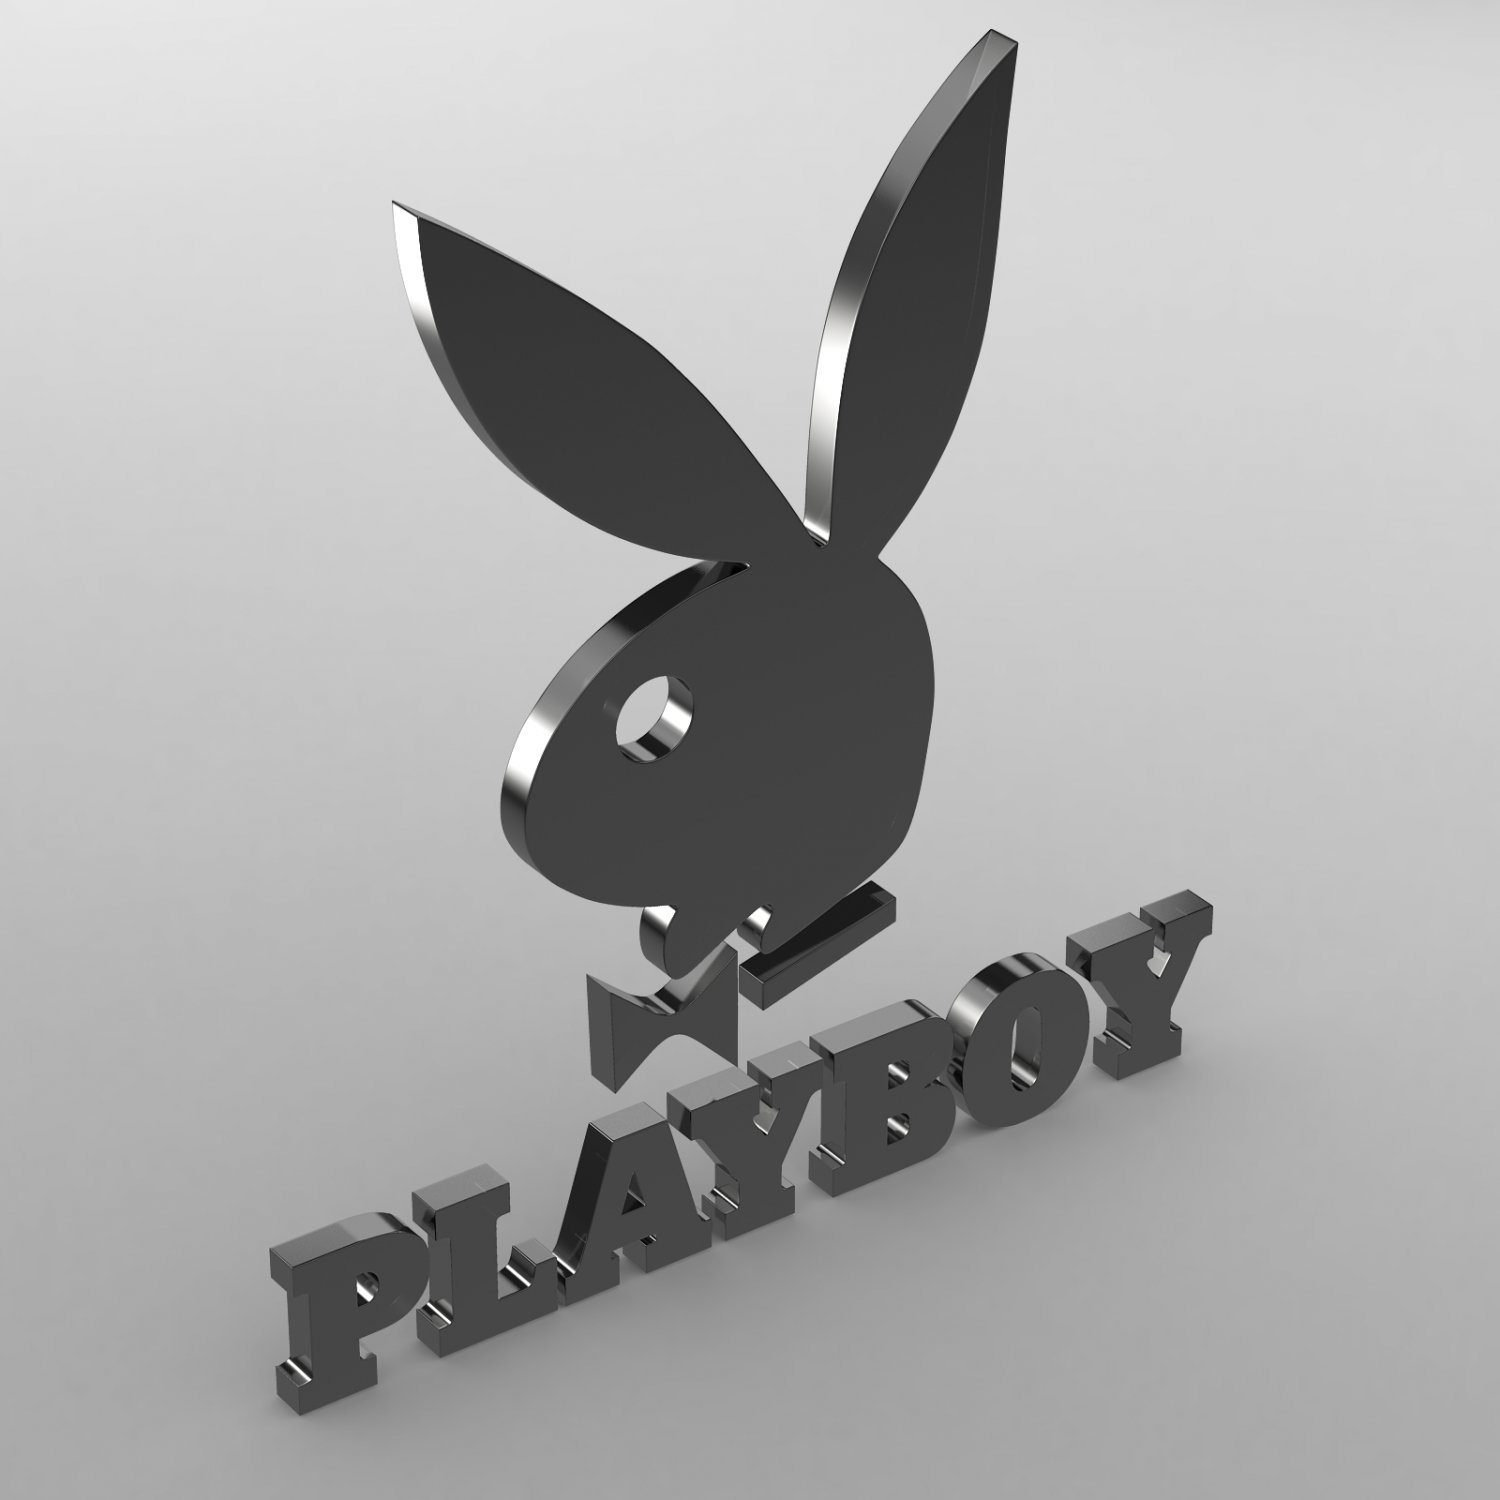 Playboy Logo Model 3D In Pakaian 3DExport